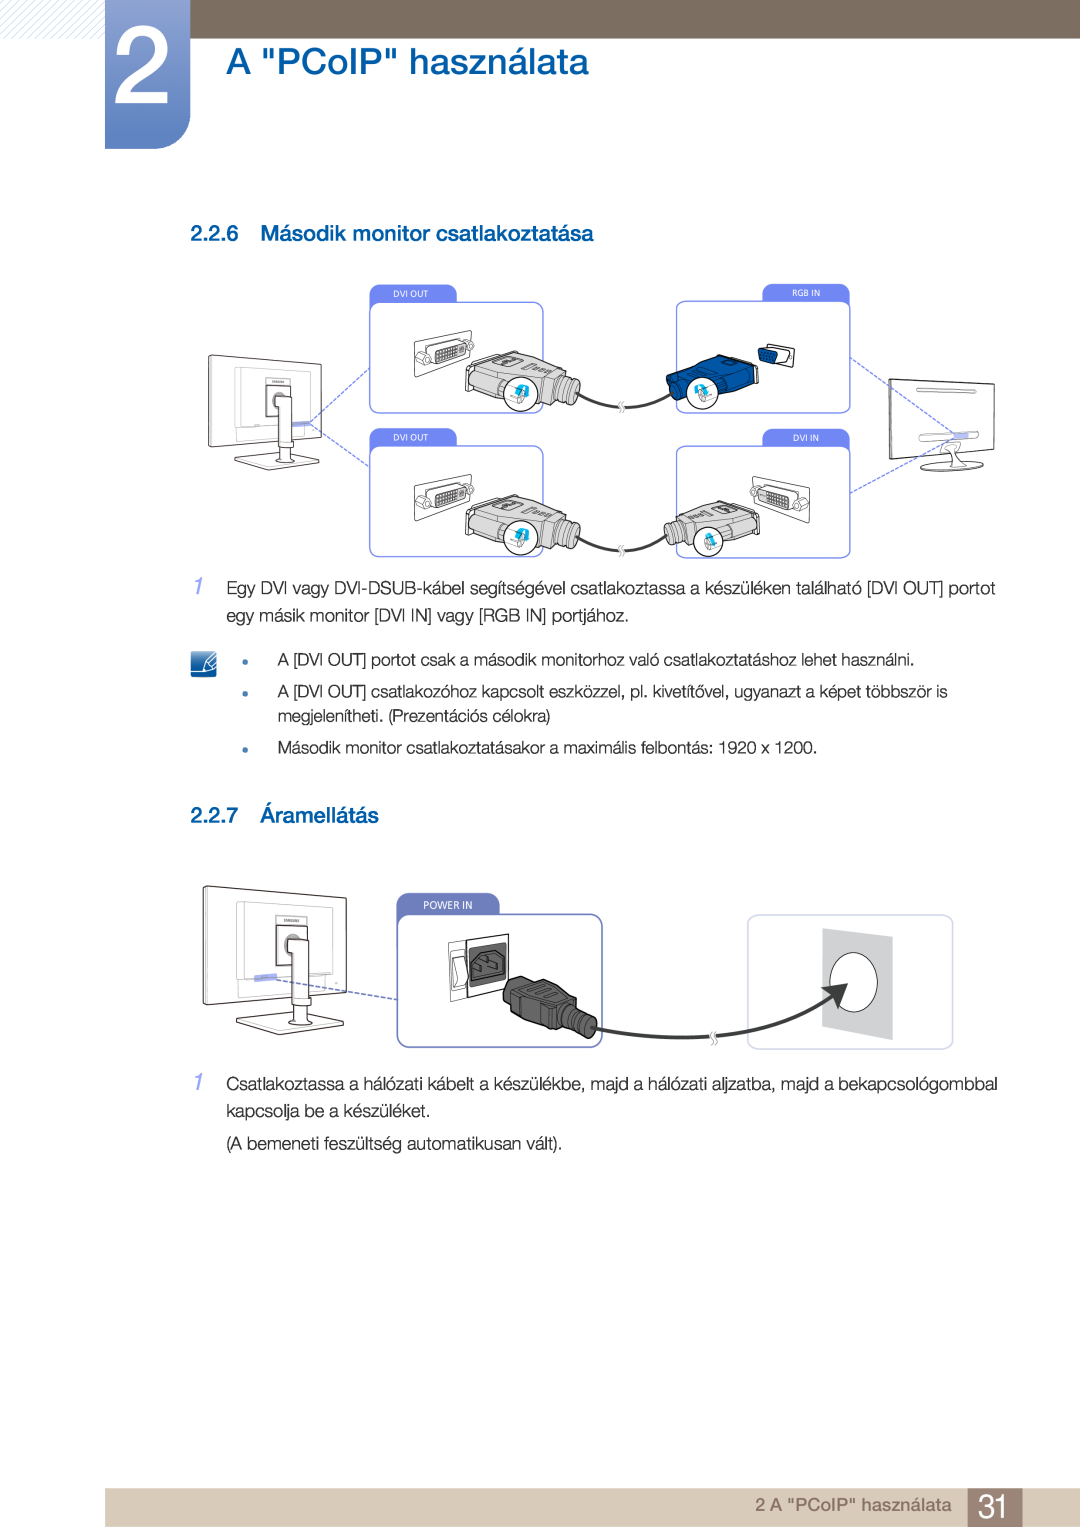 Samsung LF22FN1PFBZXEN manual 2.2.6 Második monitor csatlakoztatása, 2.2.7 Áramellátás, A PCoIP használata 